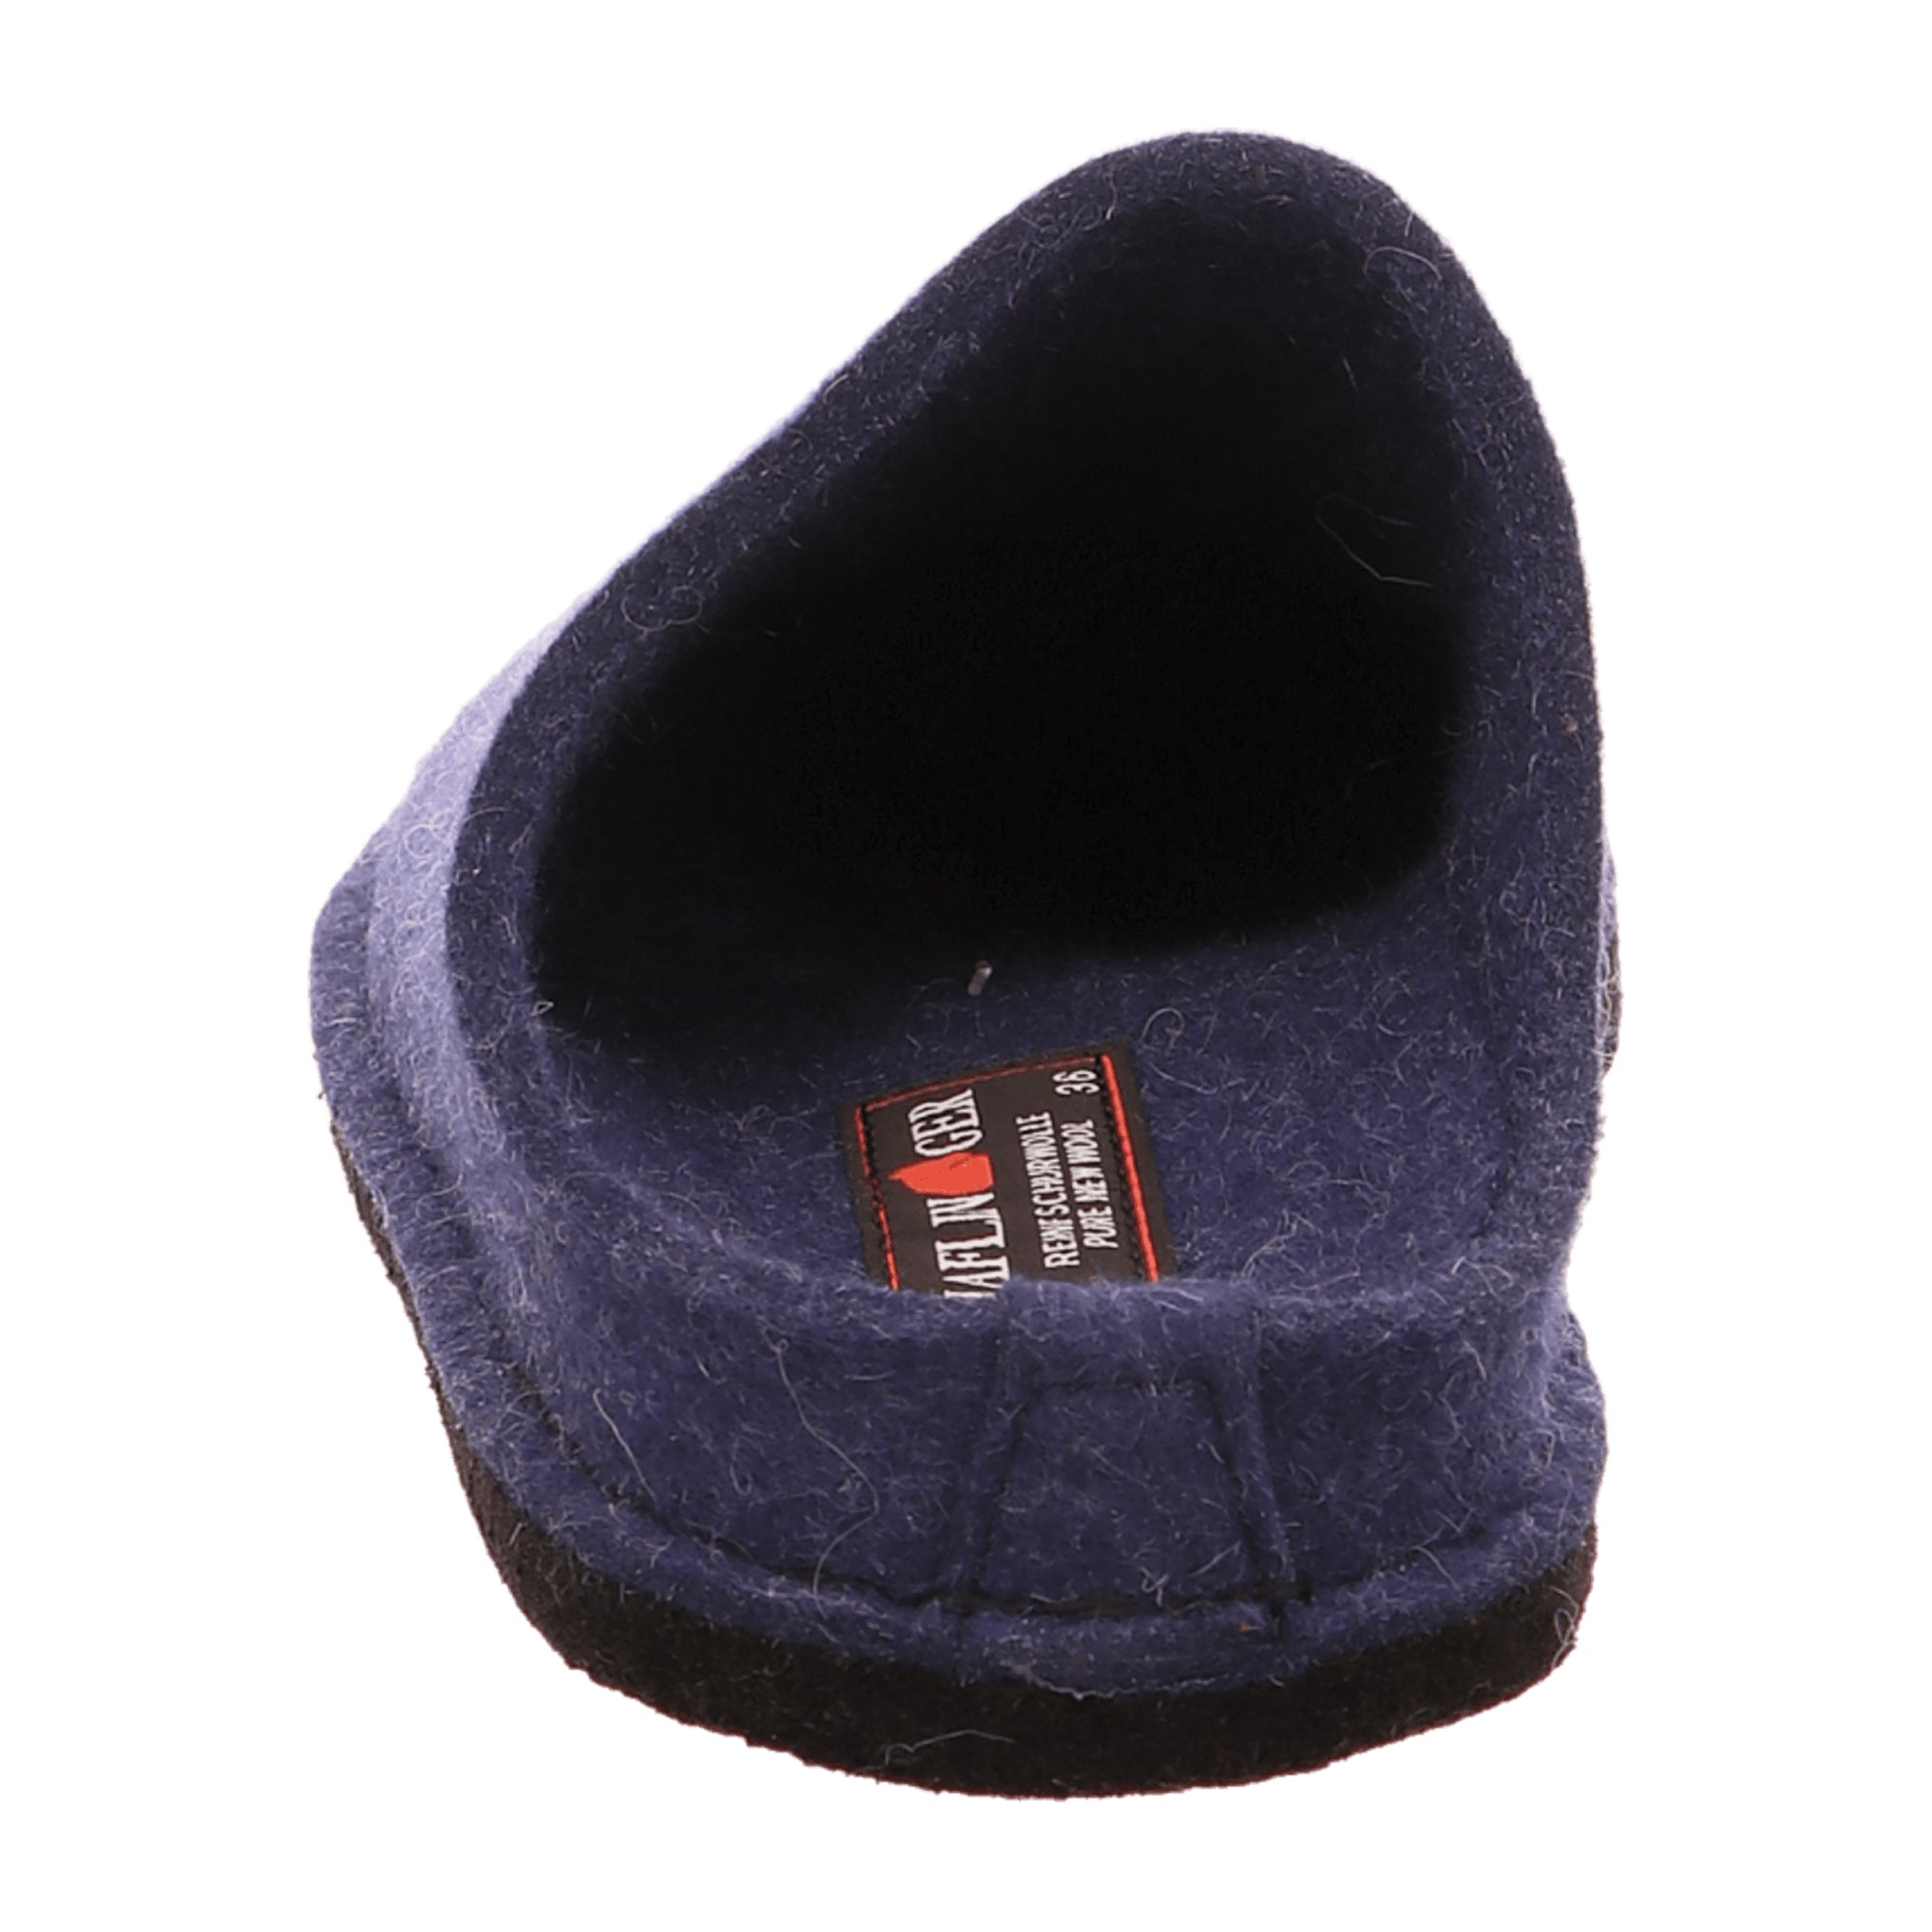 Haflinger Men's Slippers - Durable Comfort Style 311010/3062787, Blue